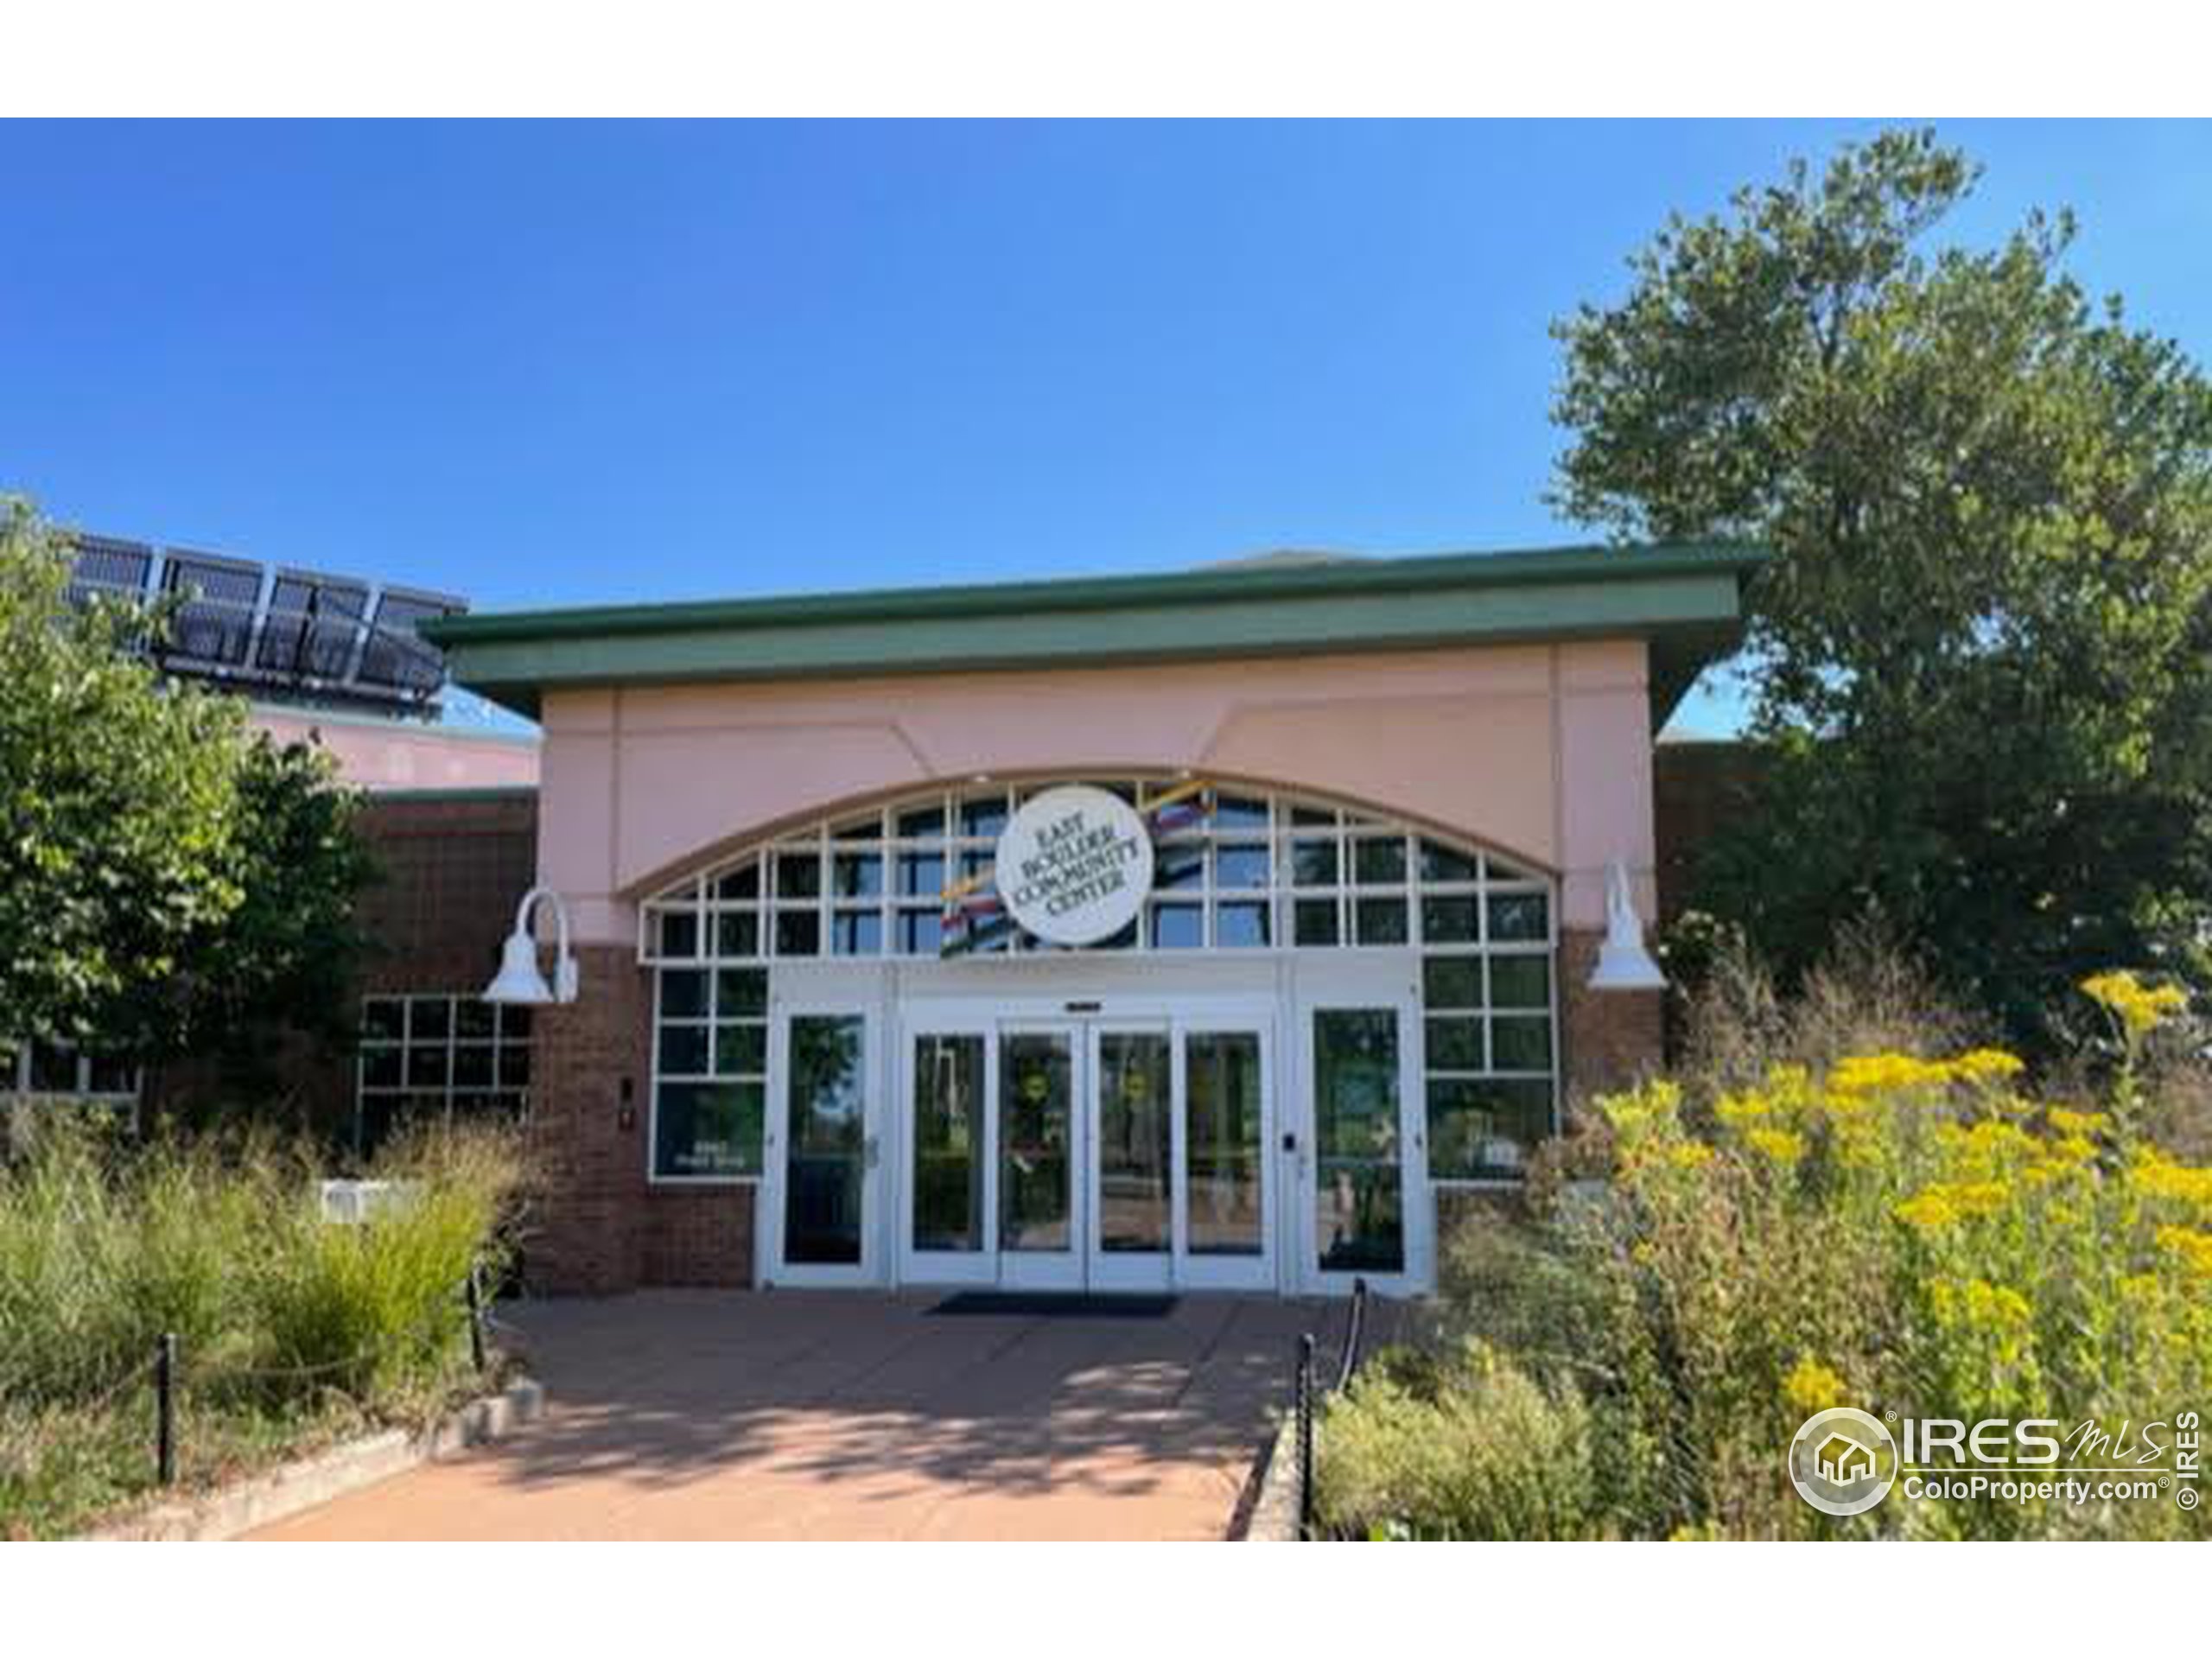 East Boulder Community Center